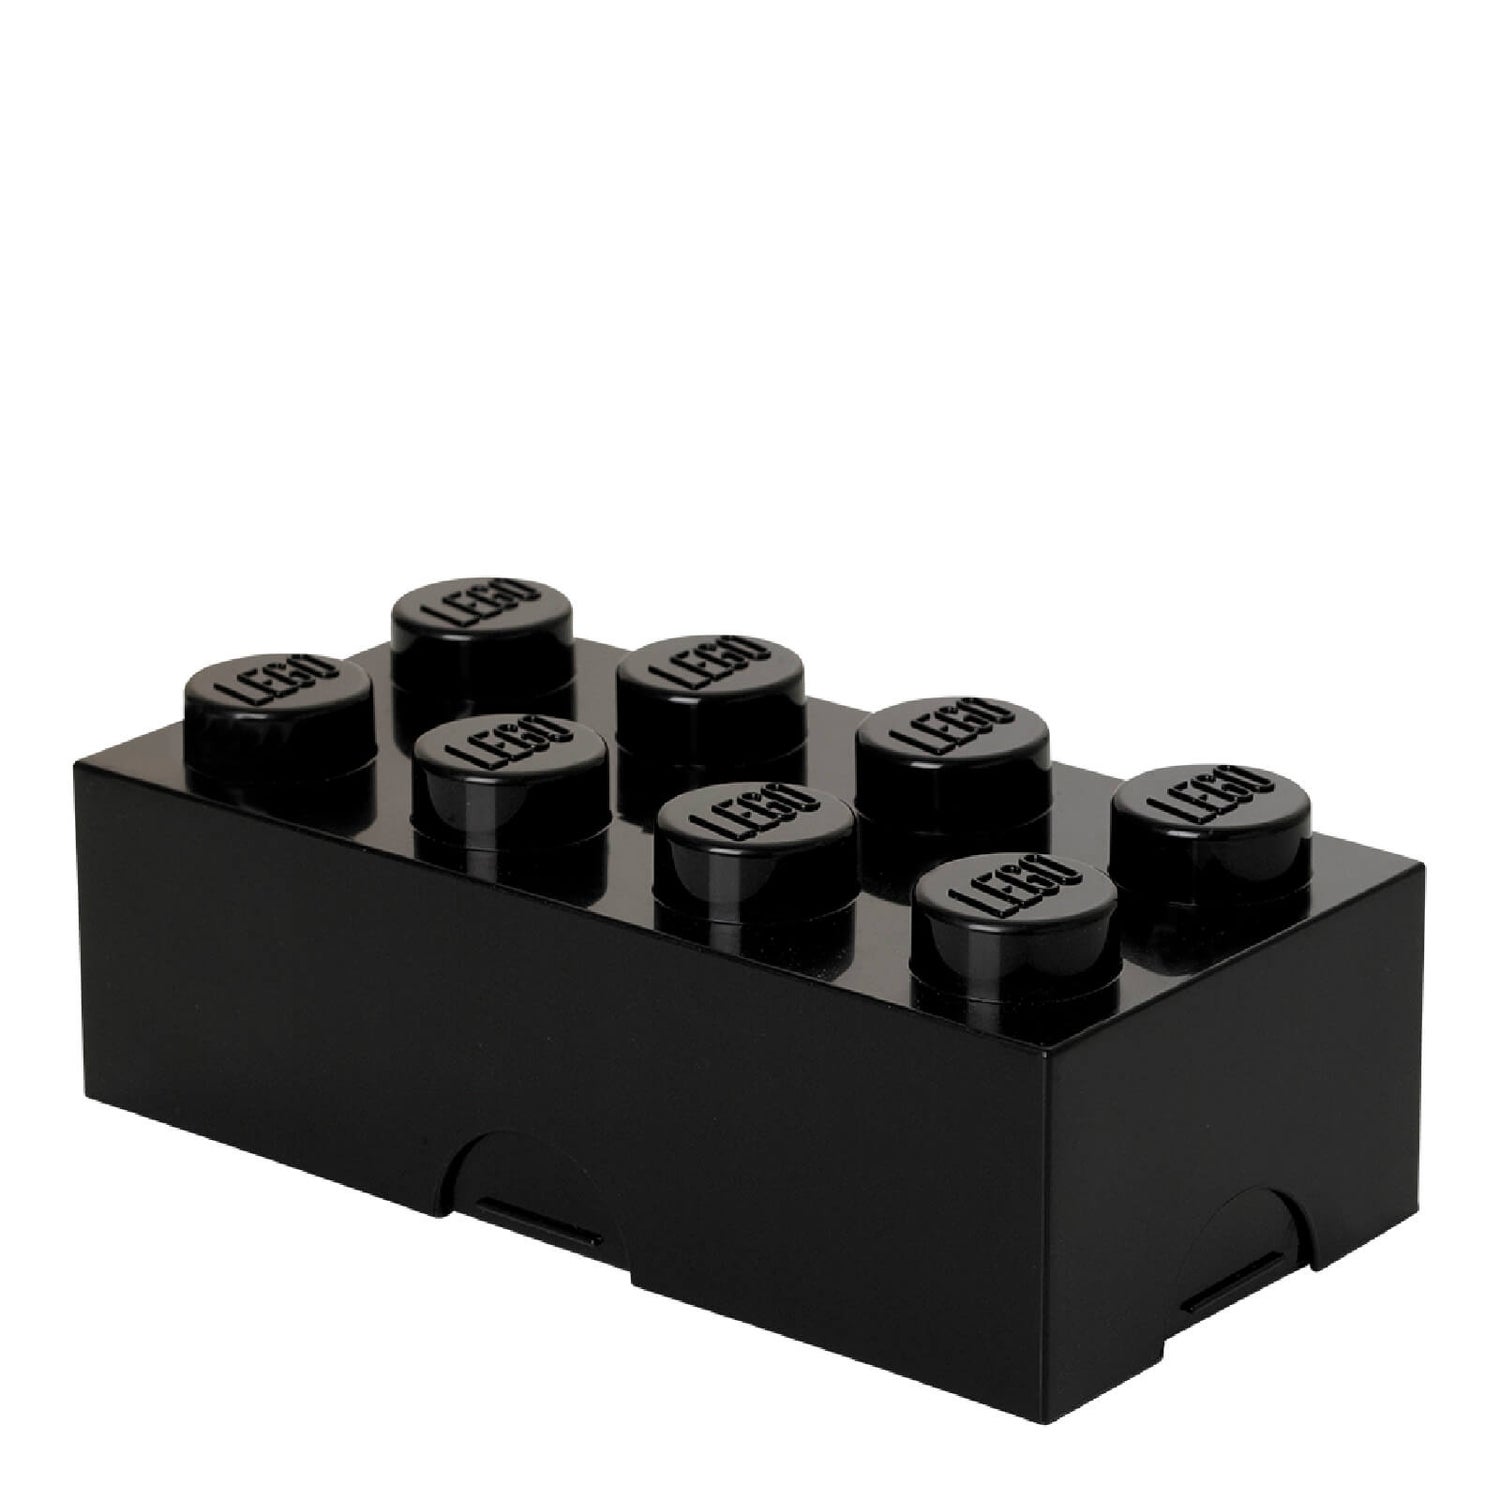 LEGO Lunch Box - Black